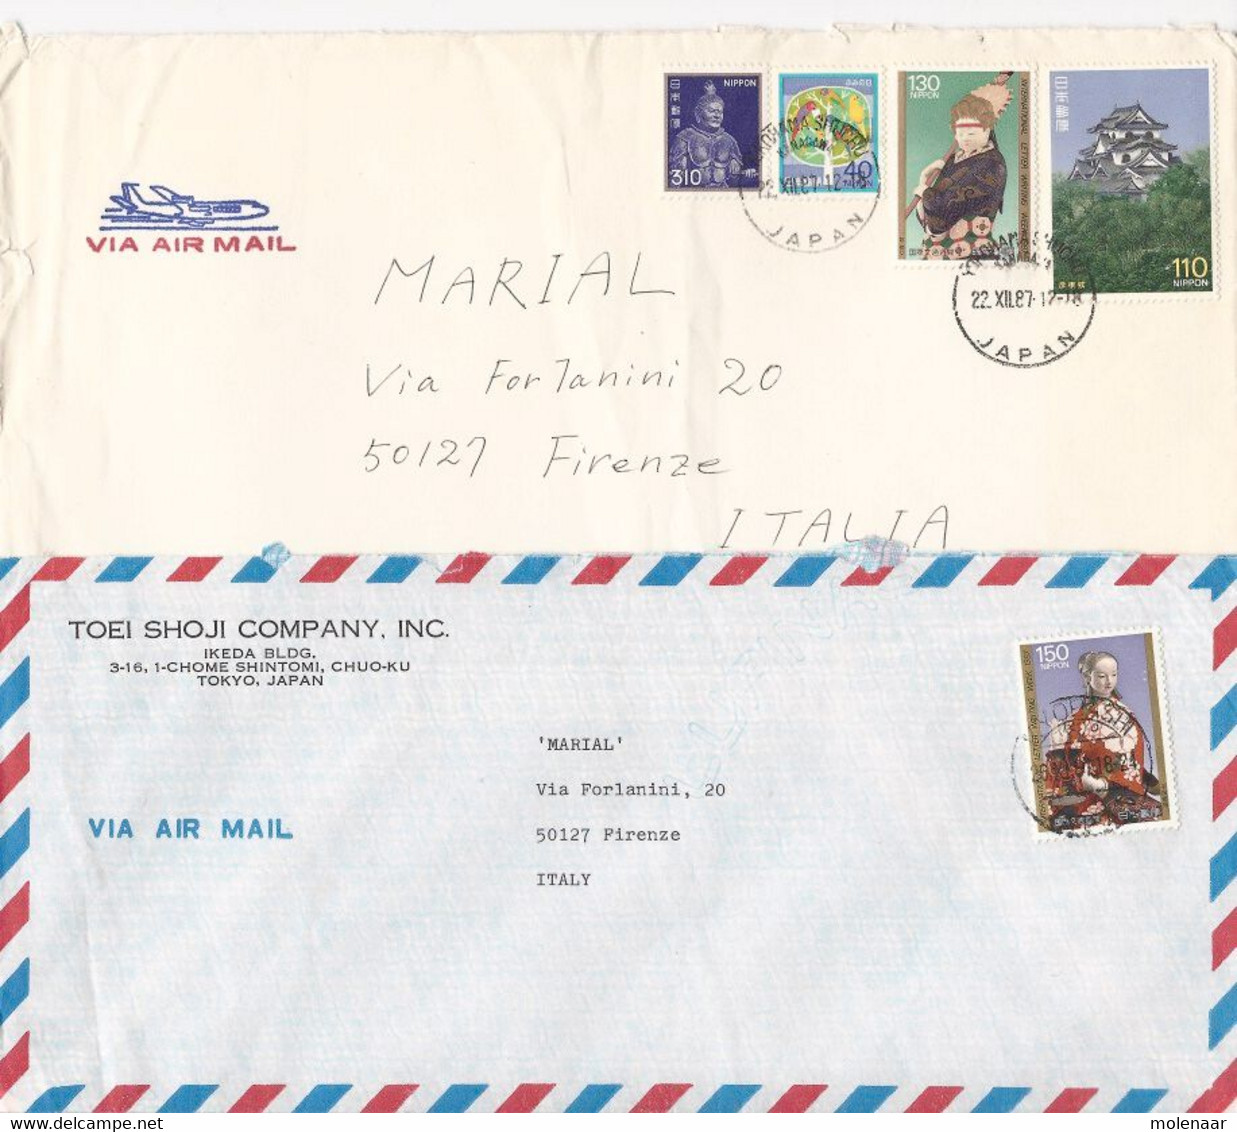 Japan 22 luchtpost en aangetekende brieven (1009)